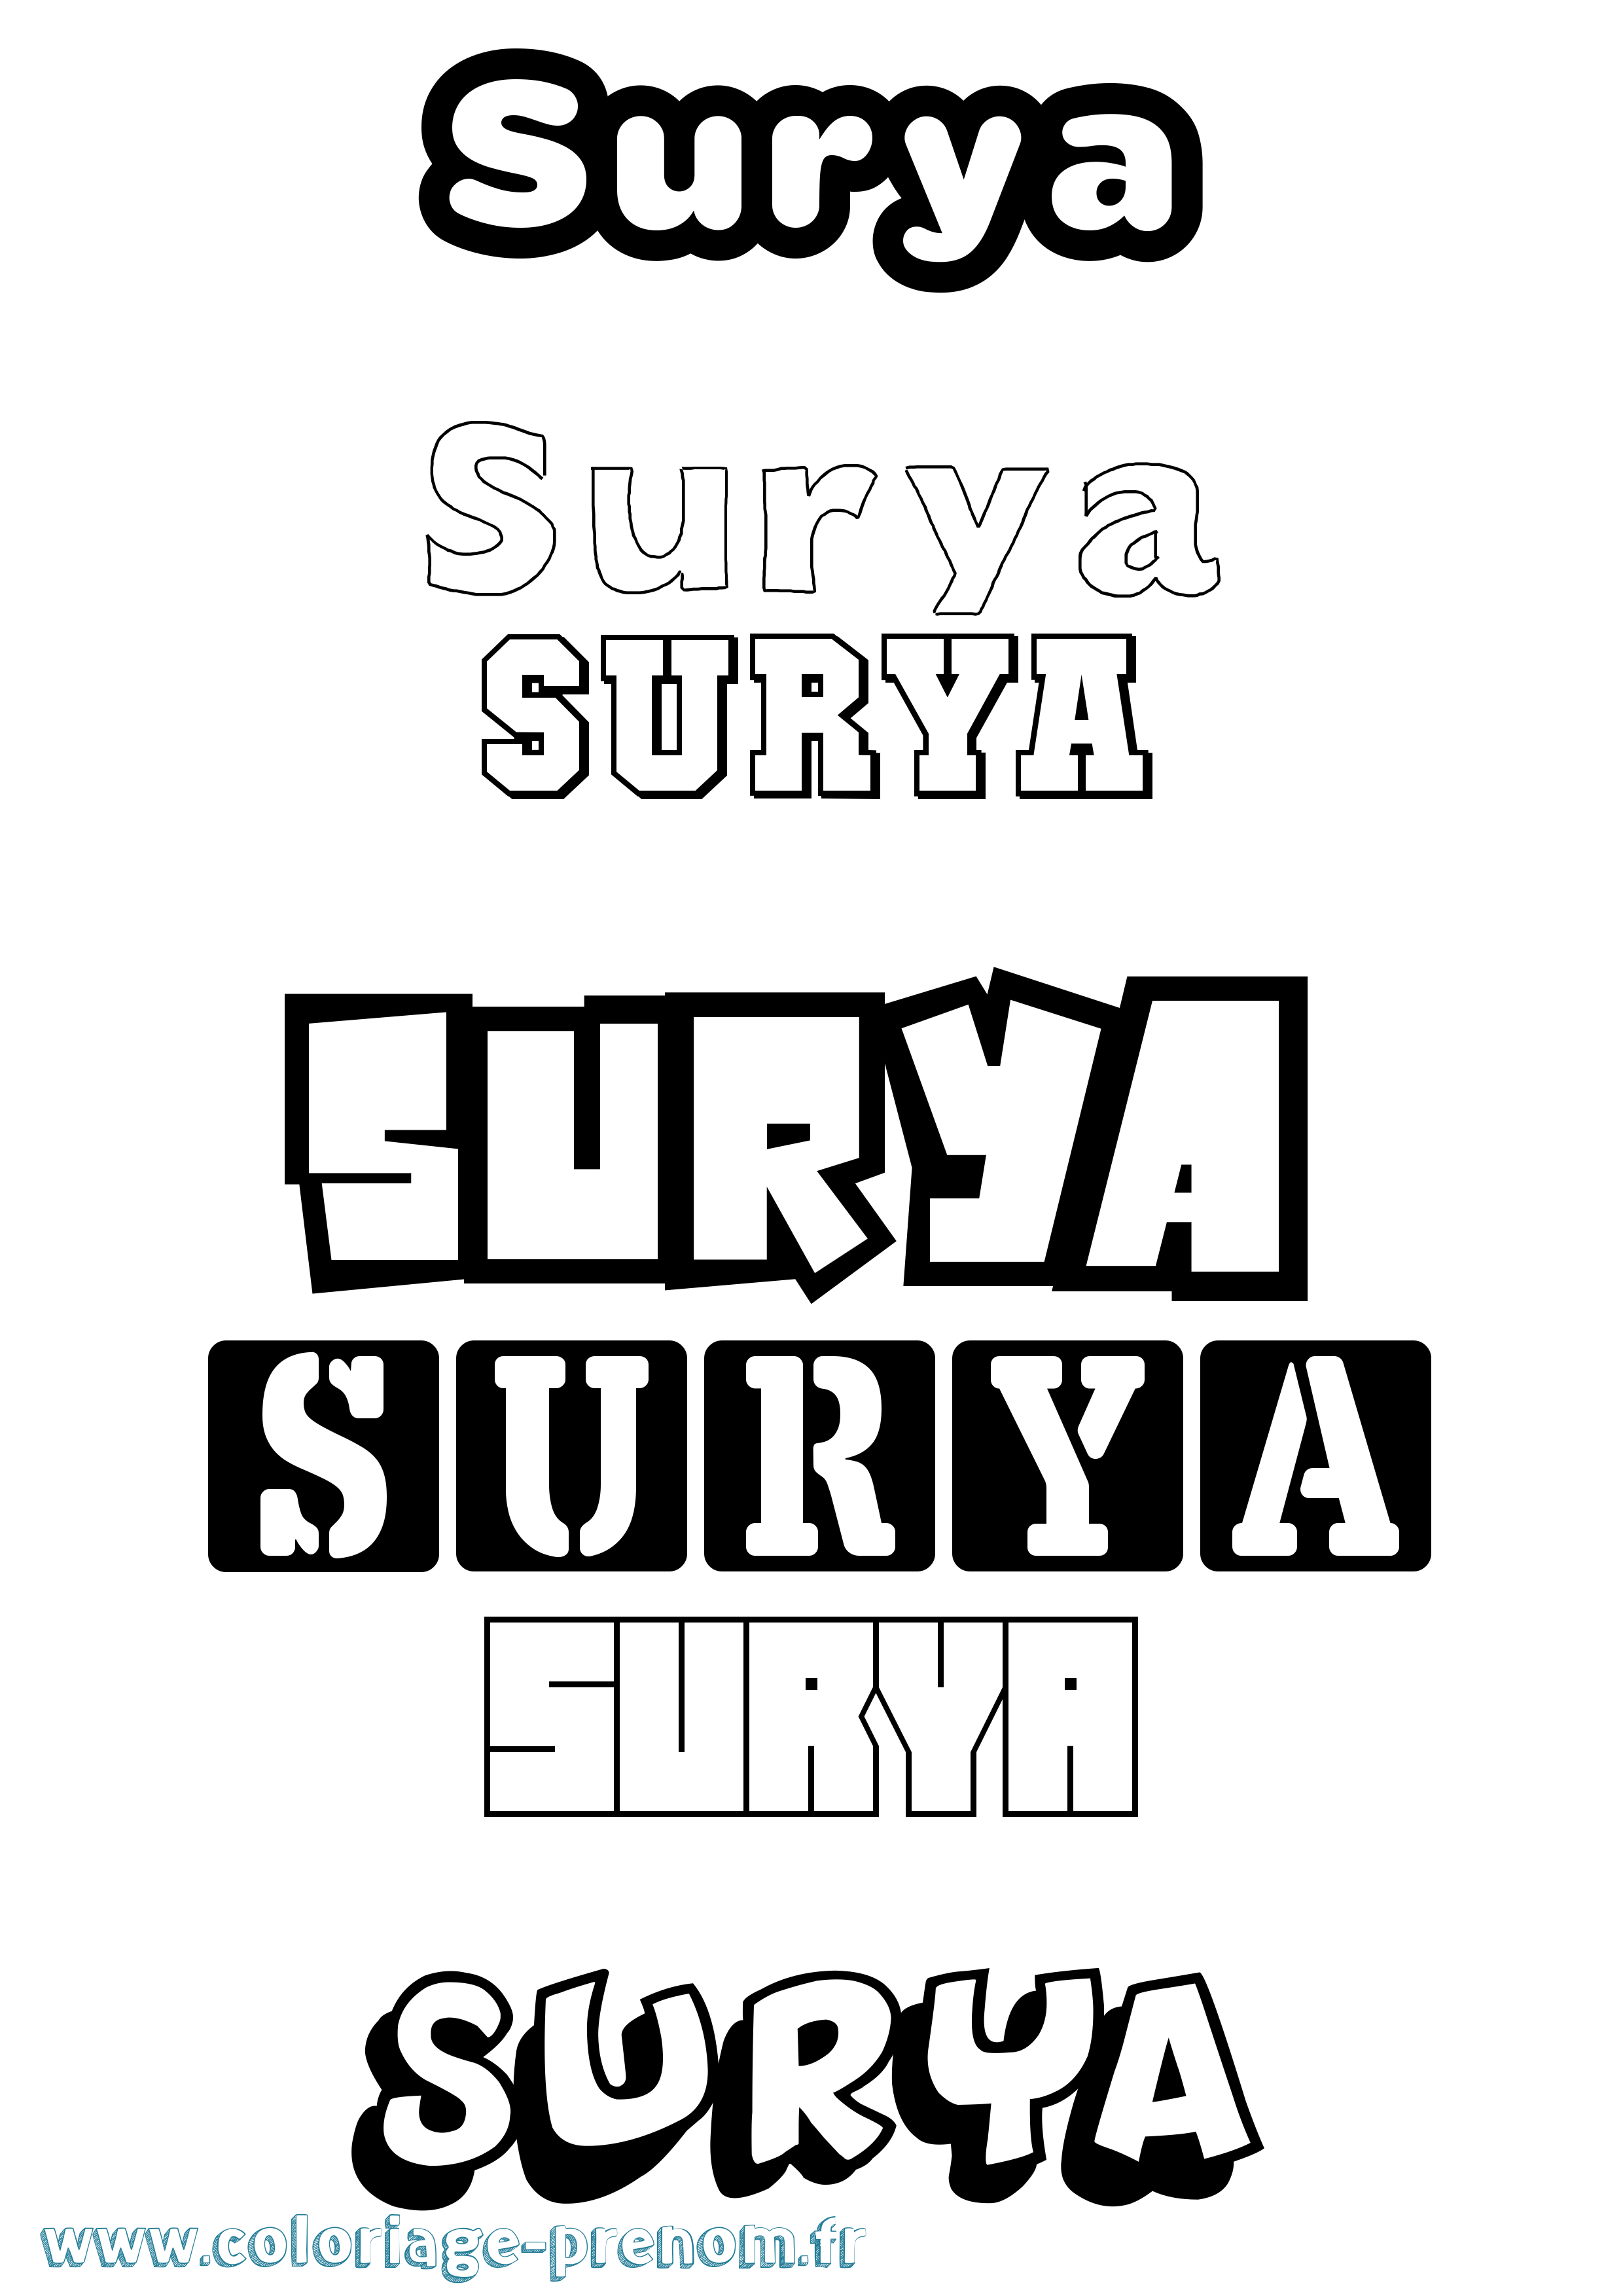 Coloriage prénom Surya Simple